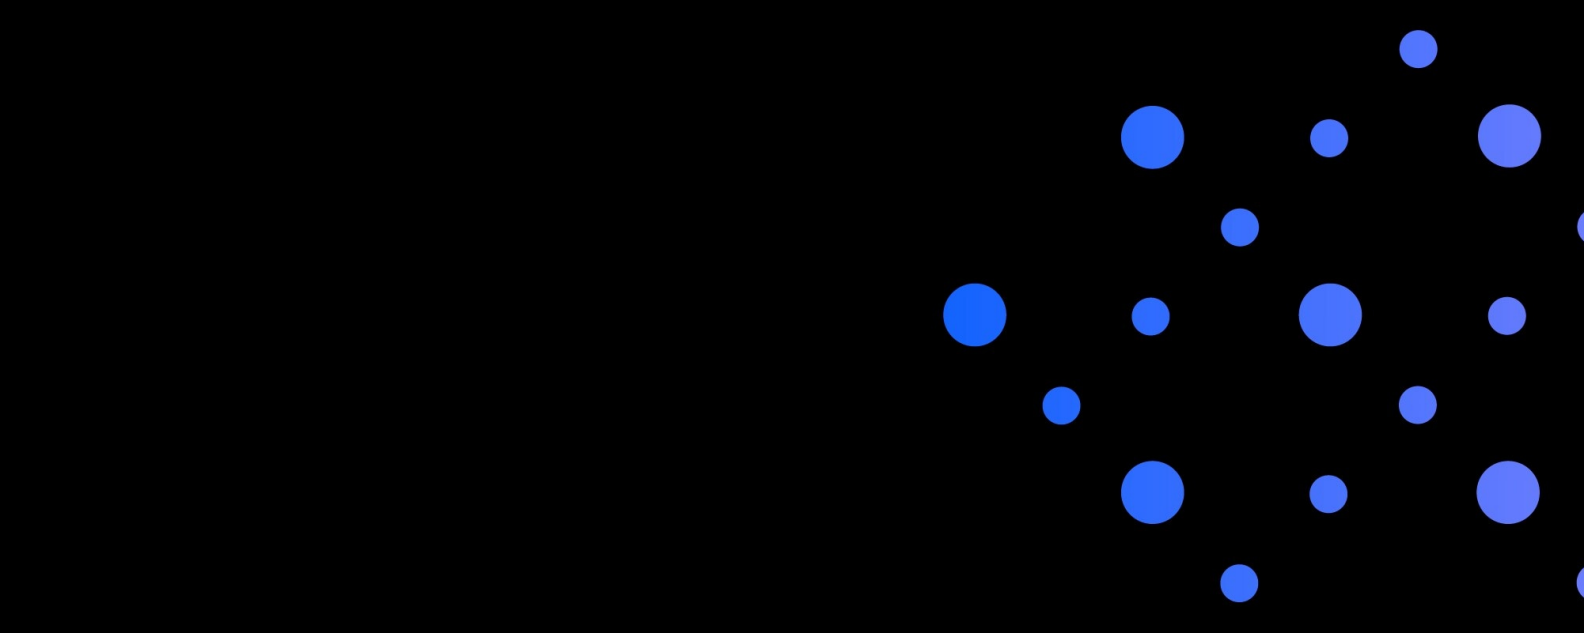 Imagem do espaço com grandes pontos azuis